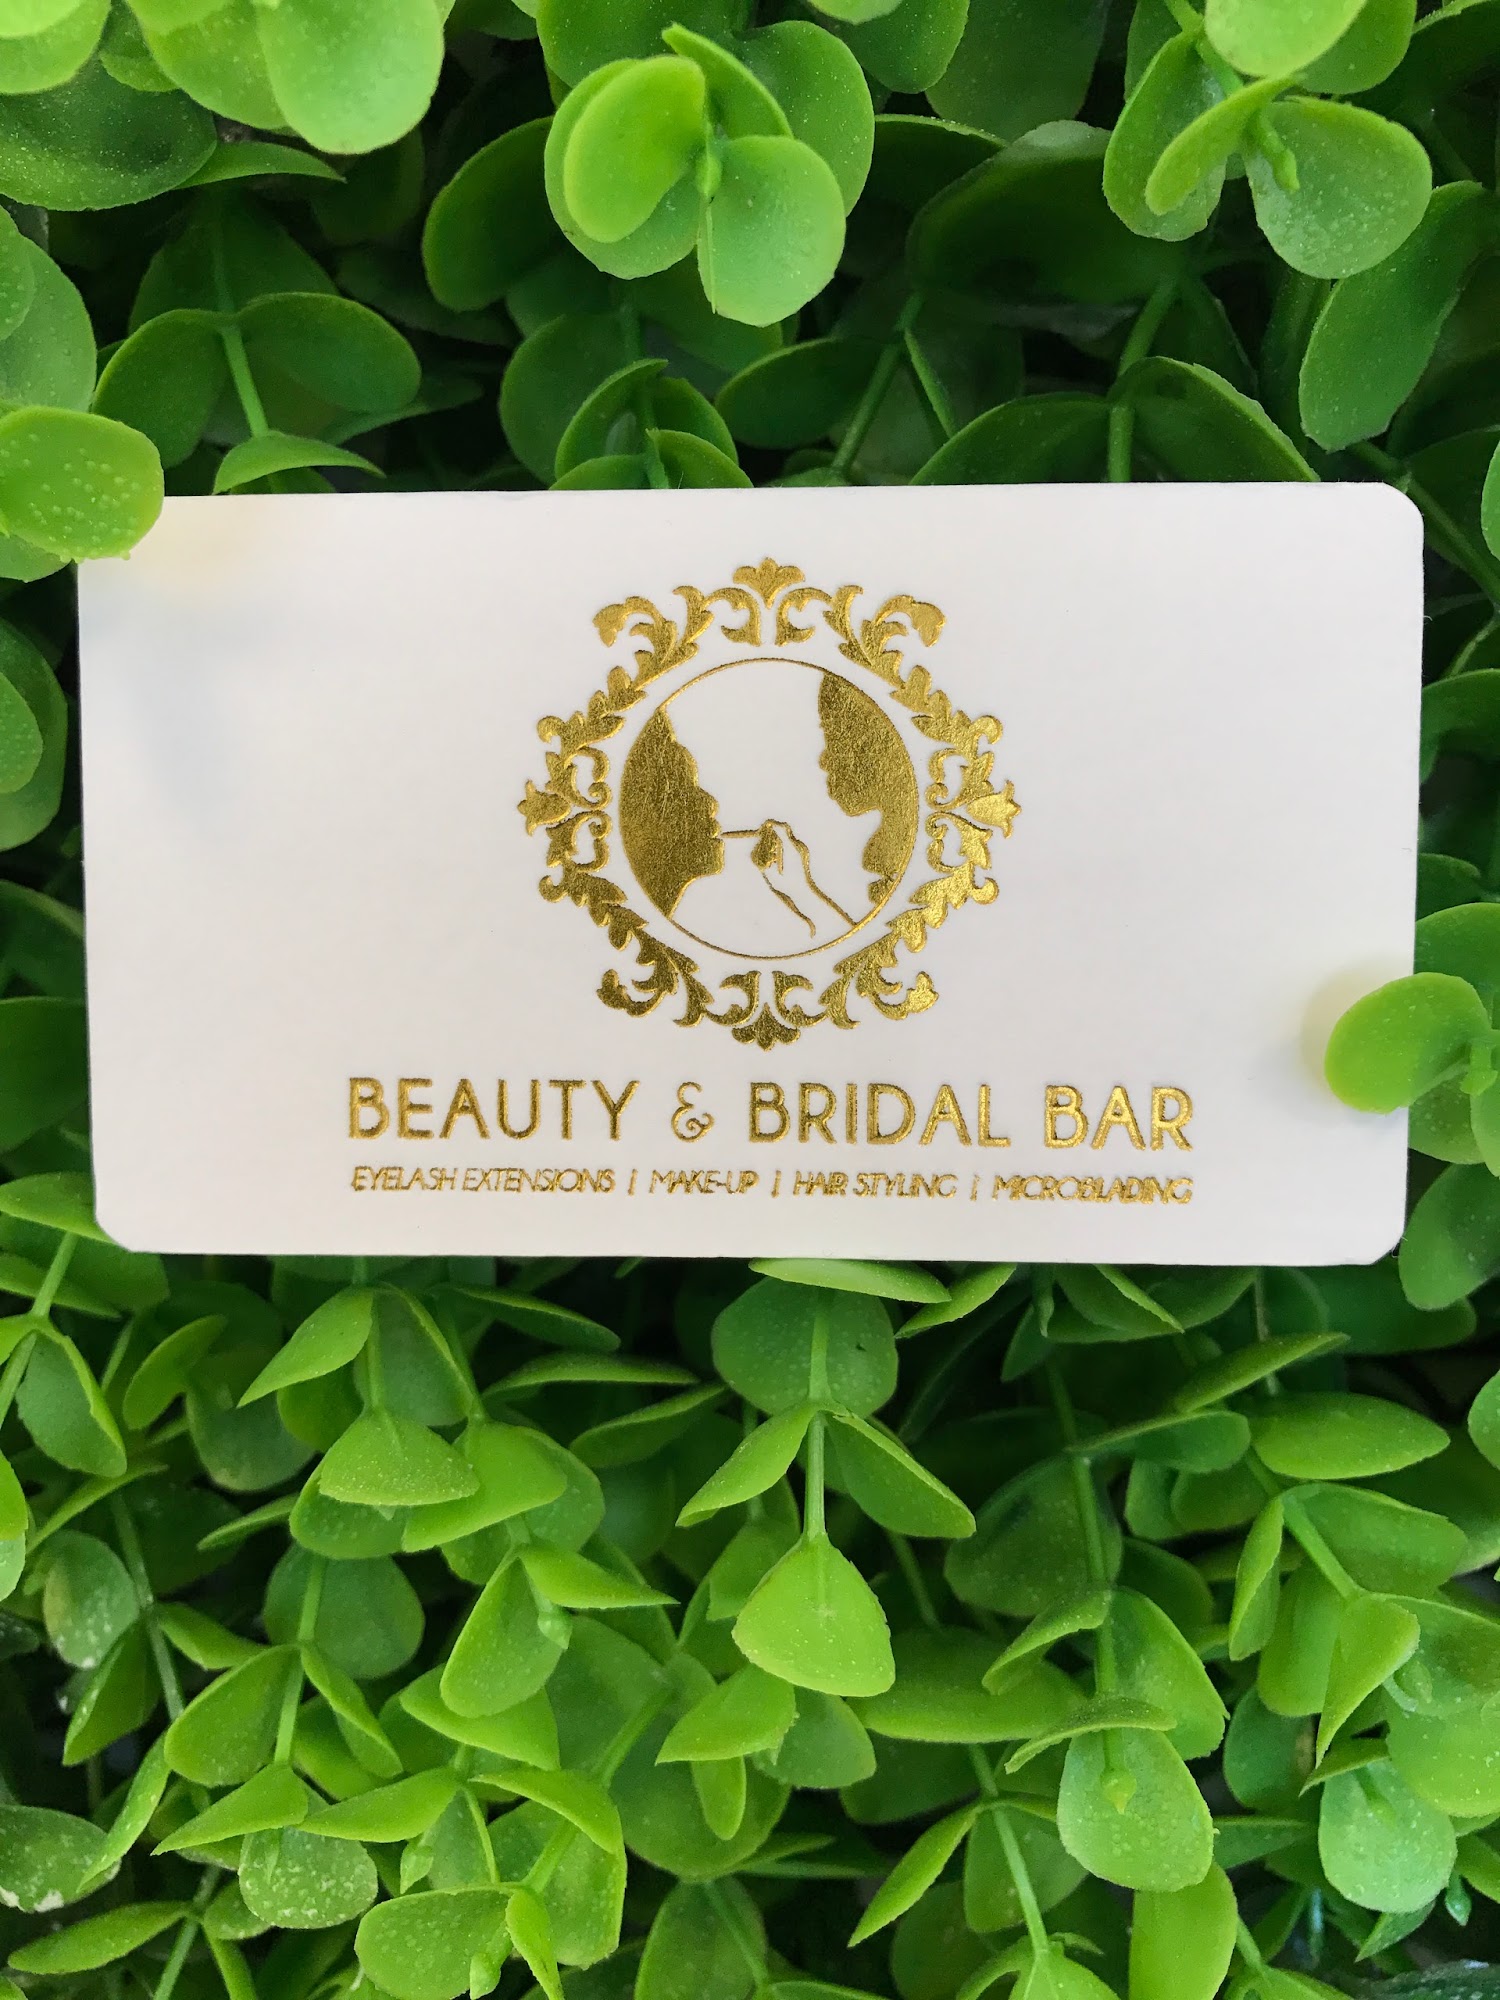 B-Lashed Beauty & Bridal Bar